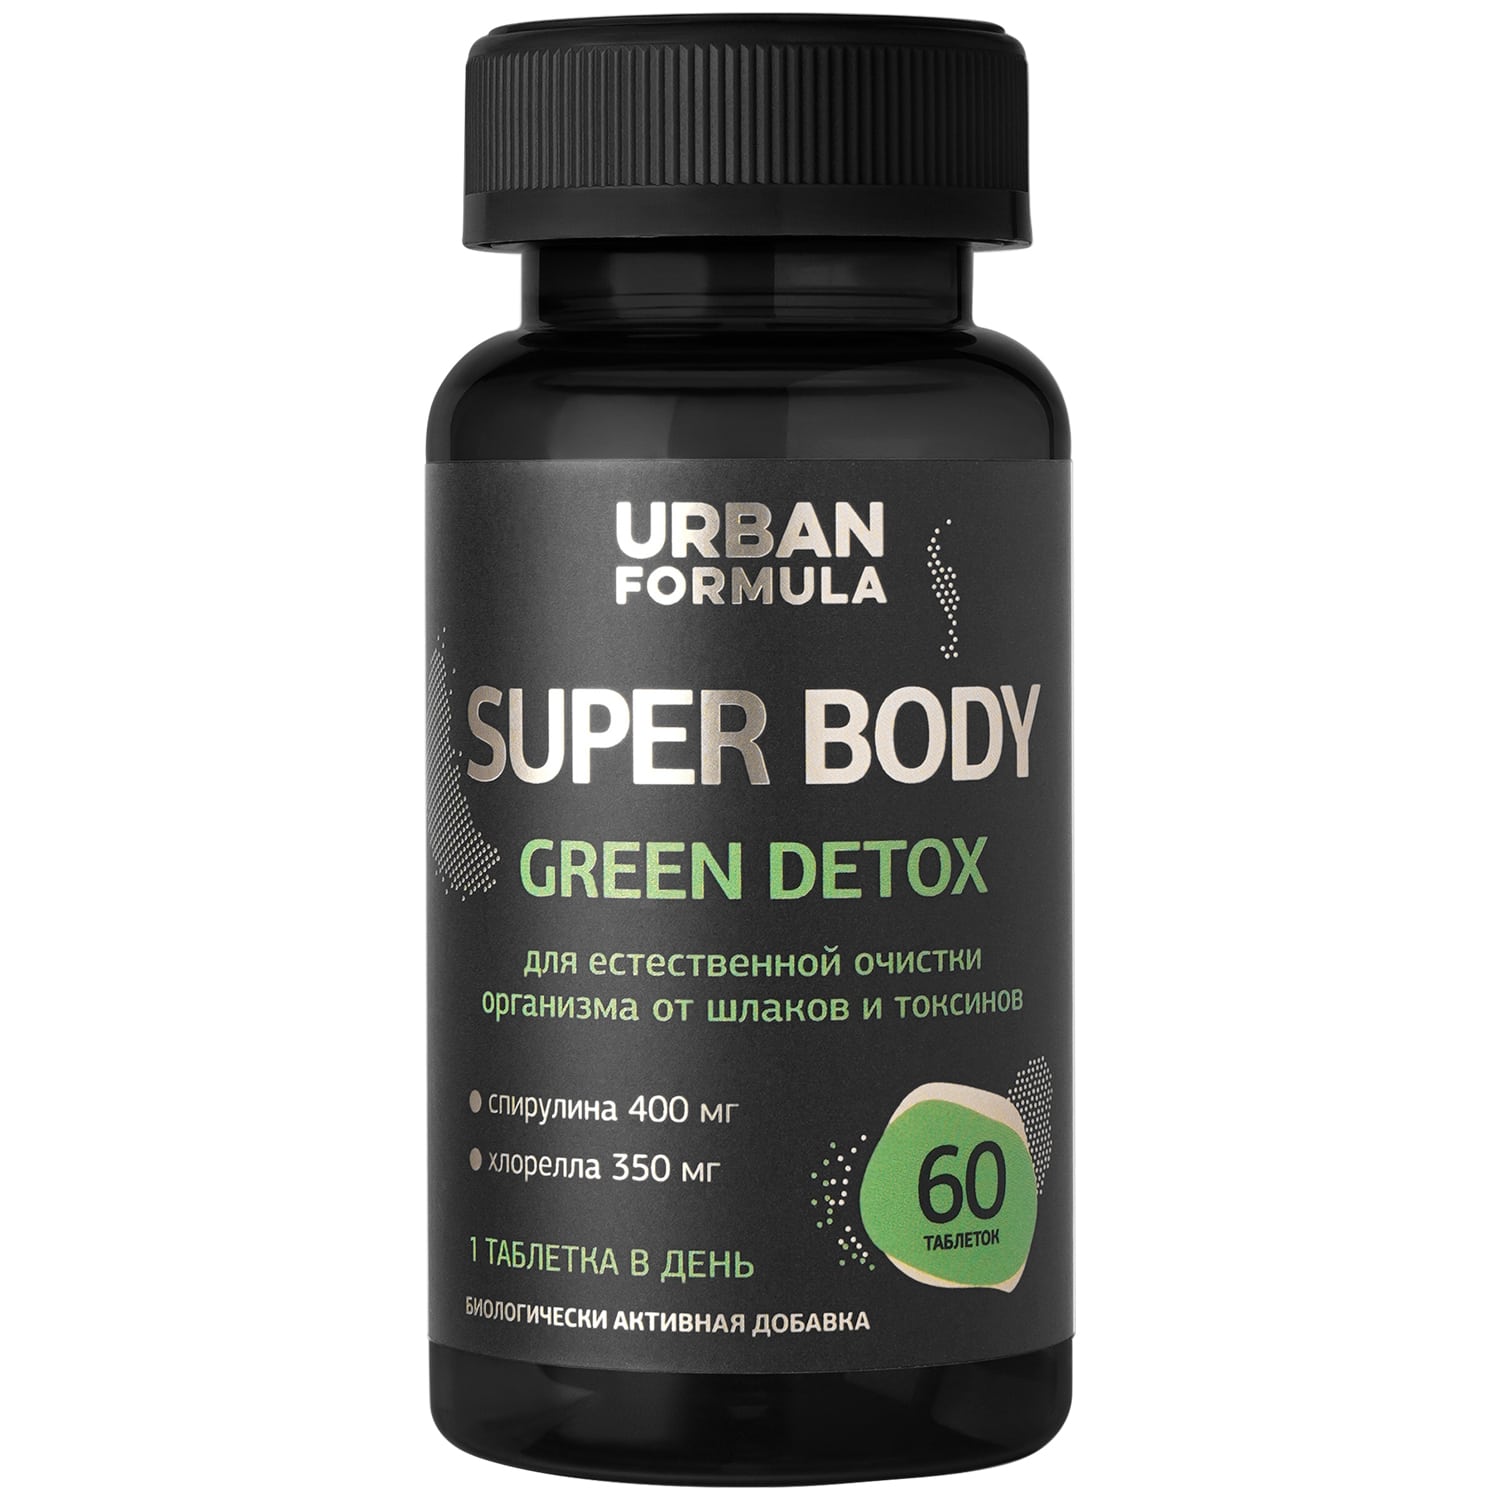 Urban Formula Комплекс на растительной основе Green Detox, 60 таблеток (Urban Formula, Super Body) комплекс коррекции веса urban formula sinbiotic flat belly 30 мл